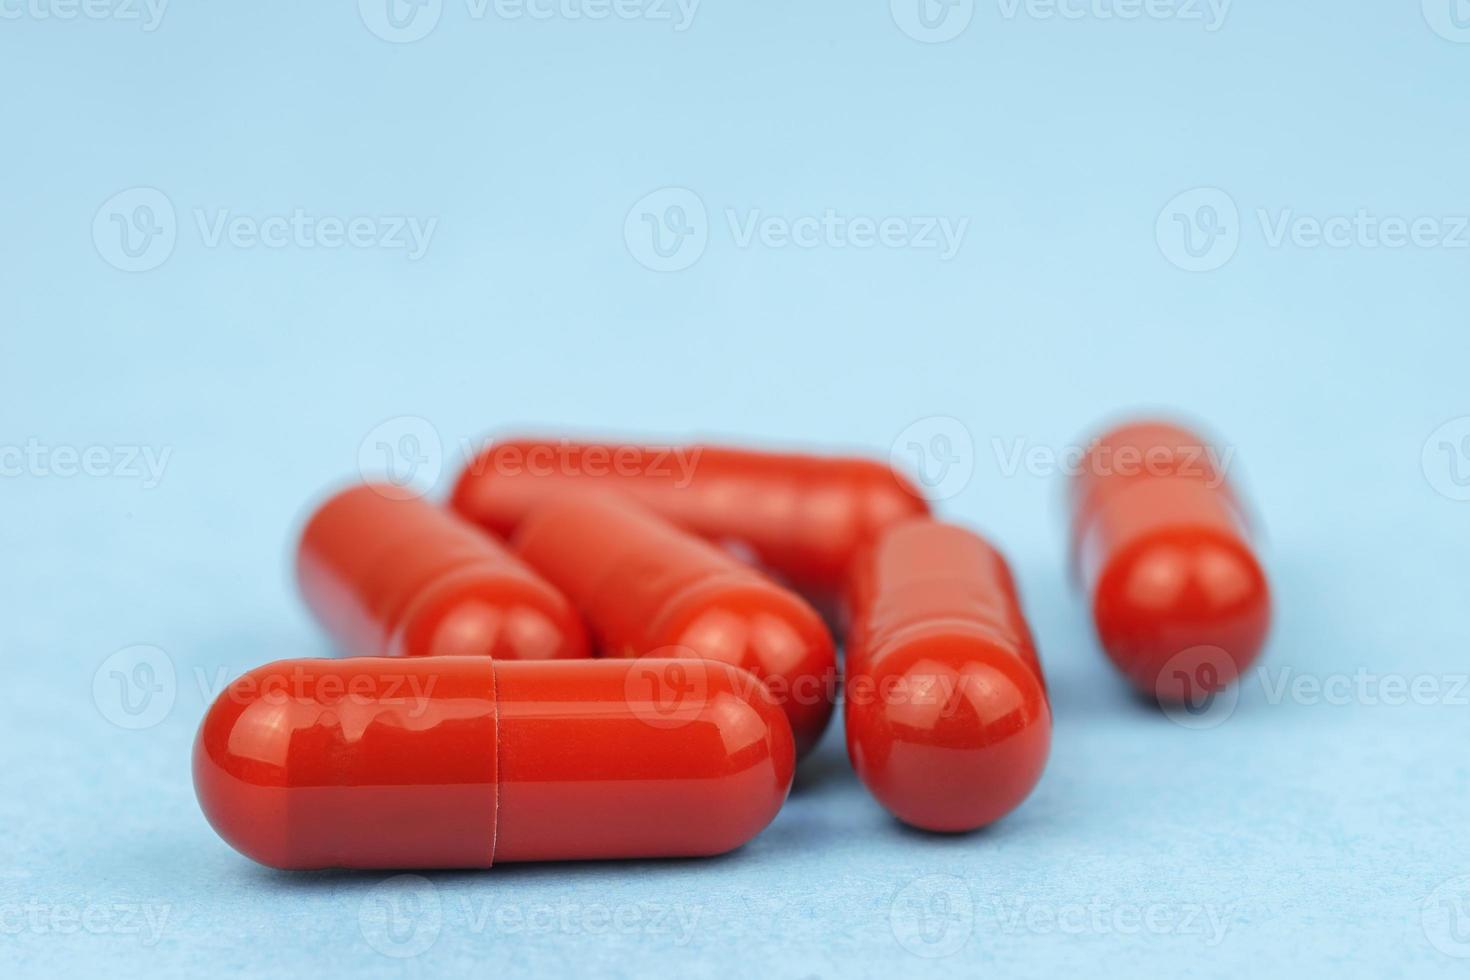 blandad farmaceutisk medicin biljard, tabletter och kapslar över blå bakgrund foto